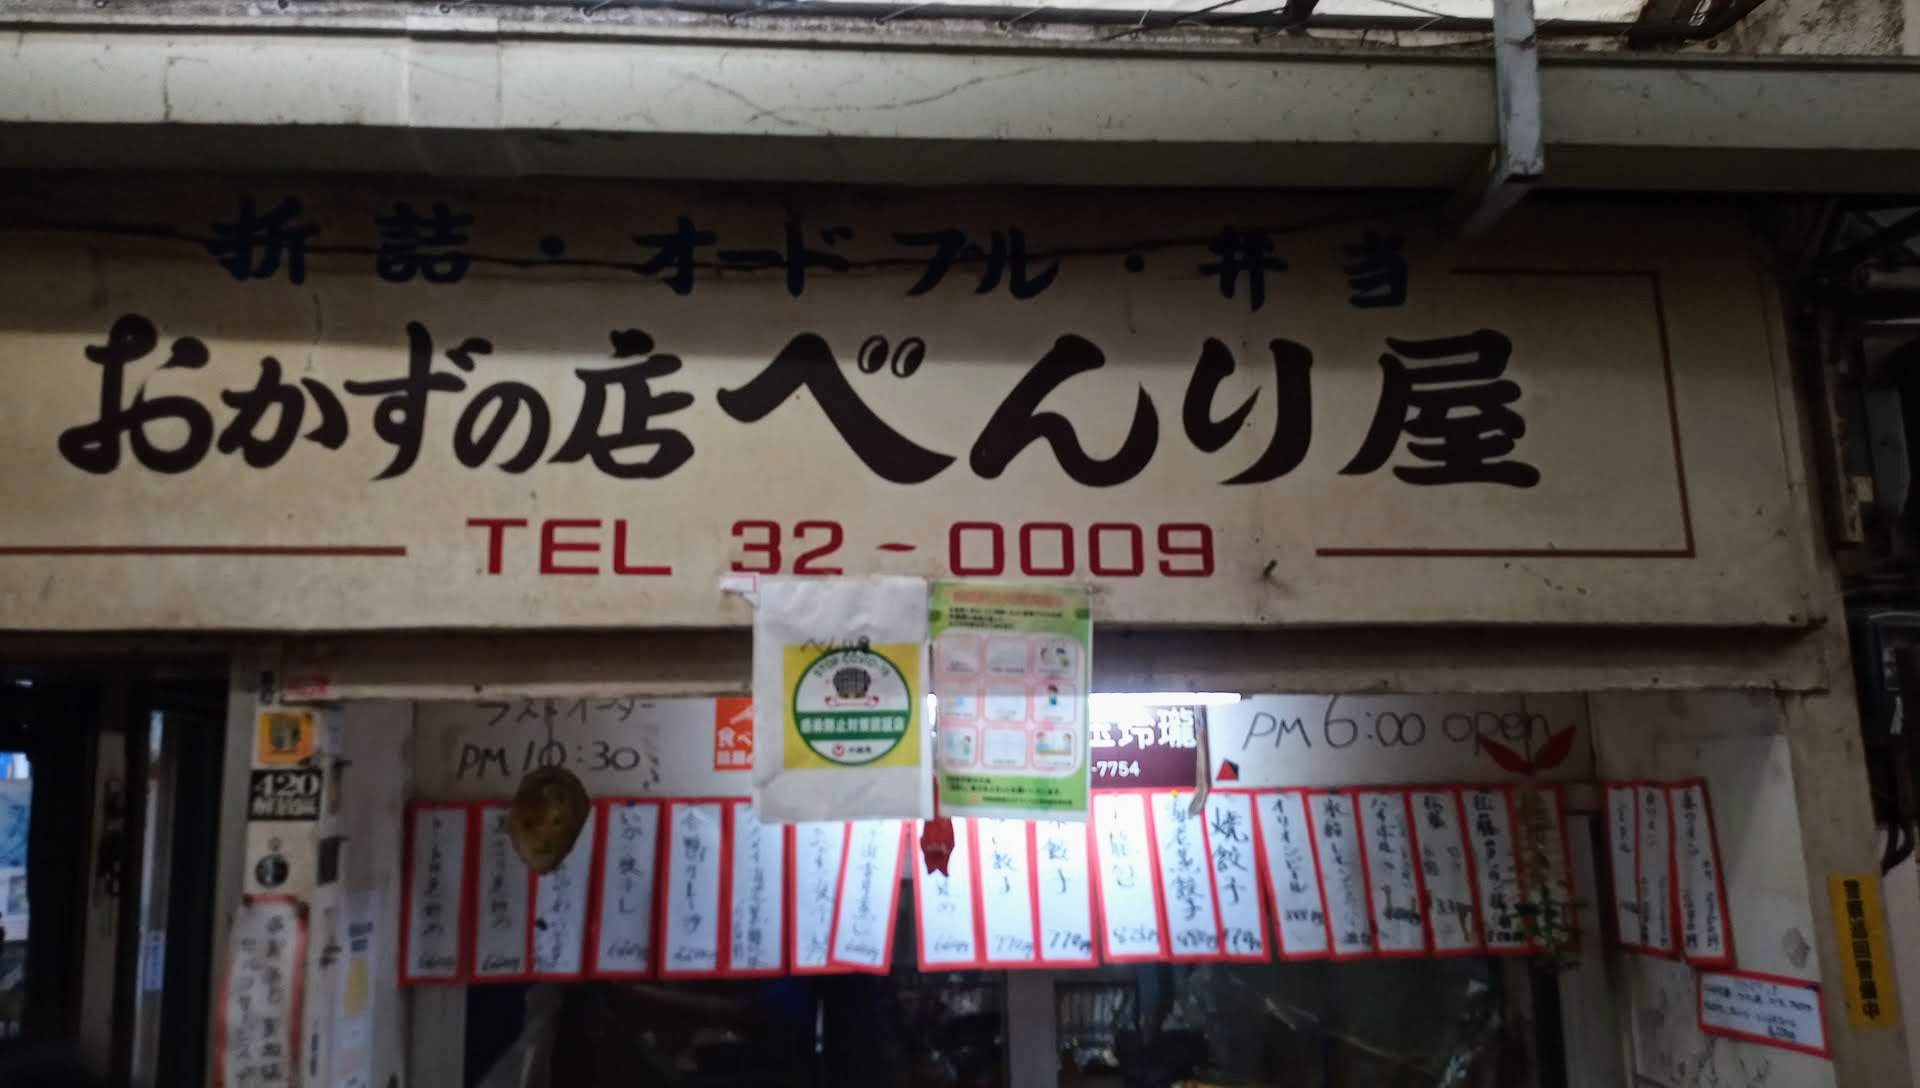 那覇市栄町にある餃子の名店「おかずの店べんり屋」で飲んできました